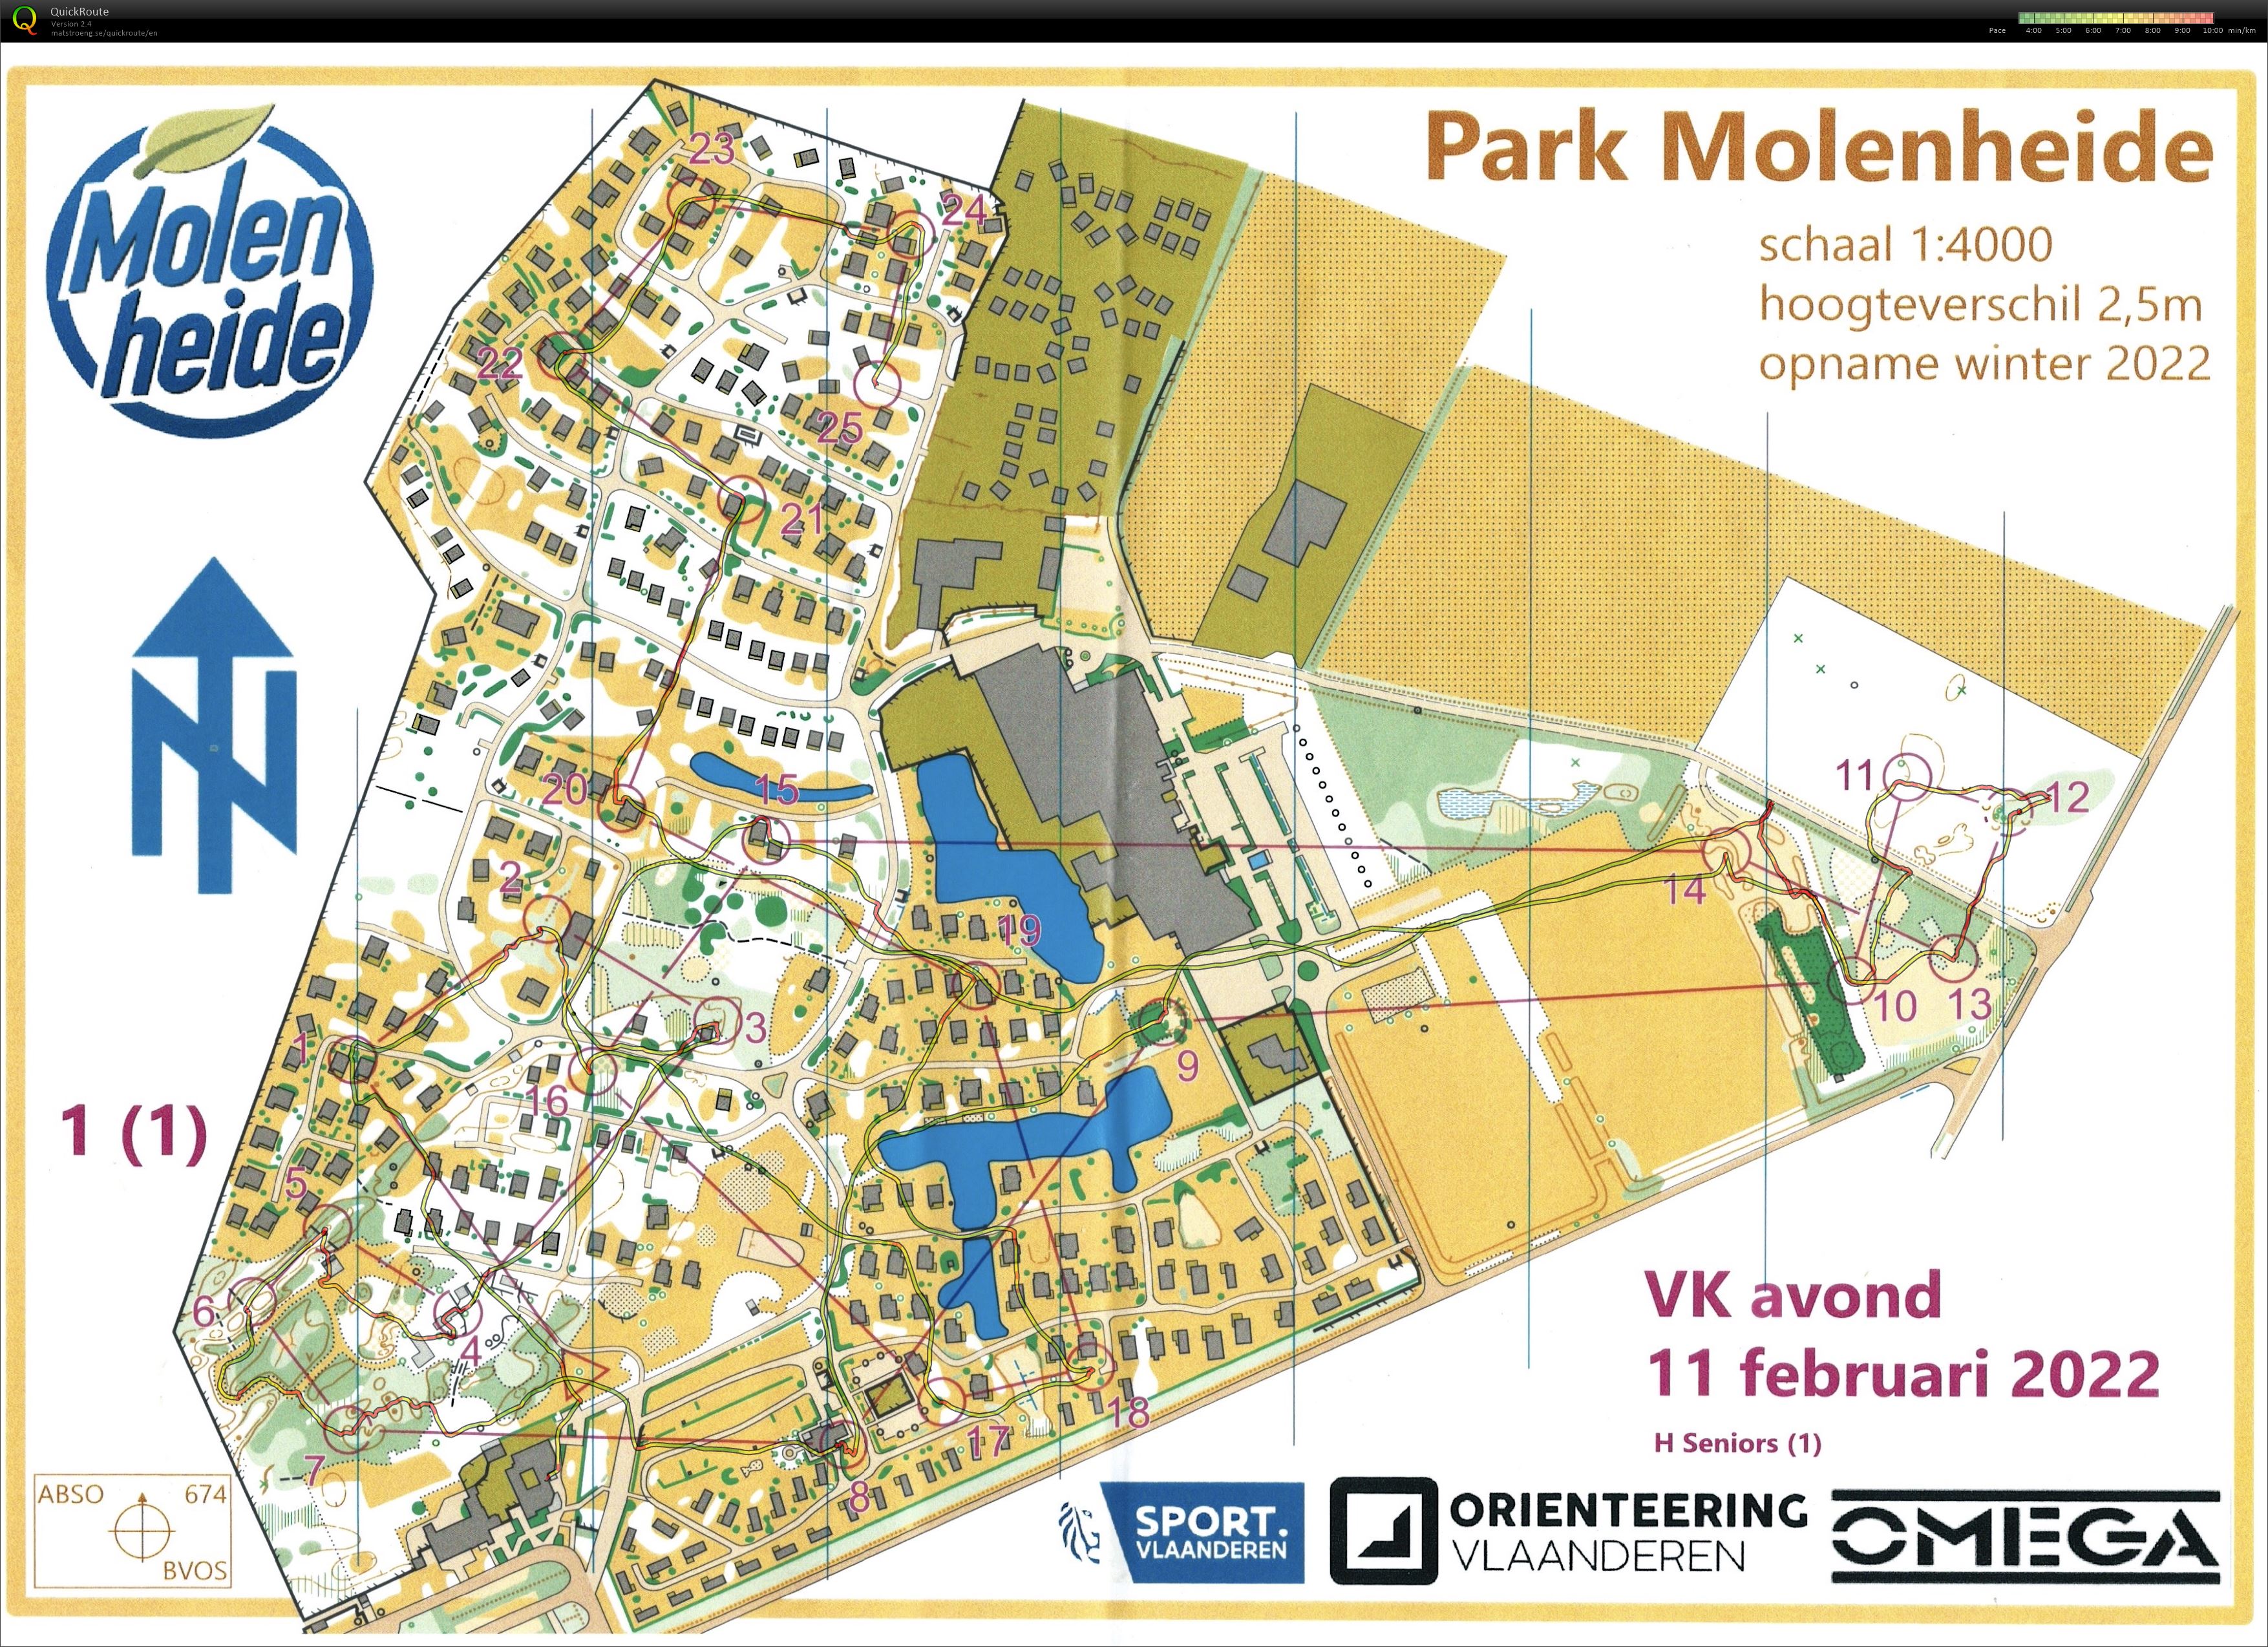 VK Avond - Park Molenheide (11.02.2022)